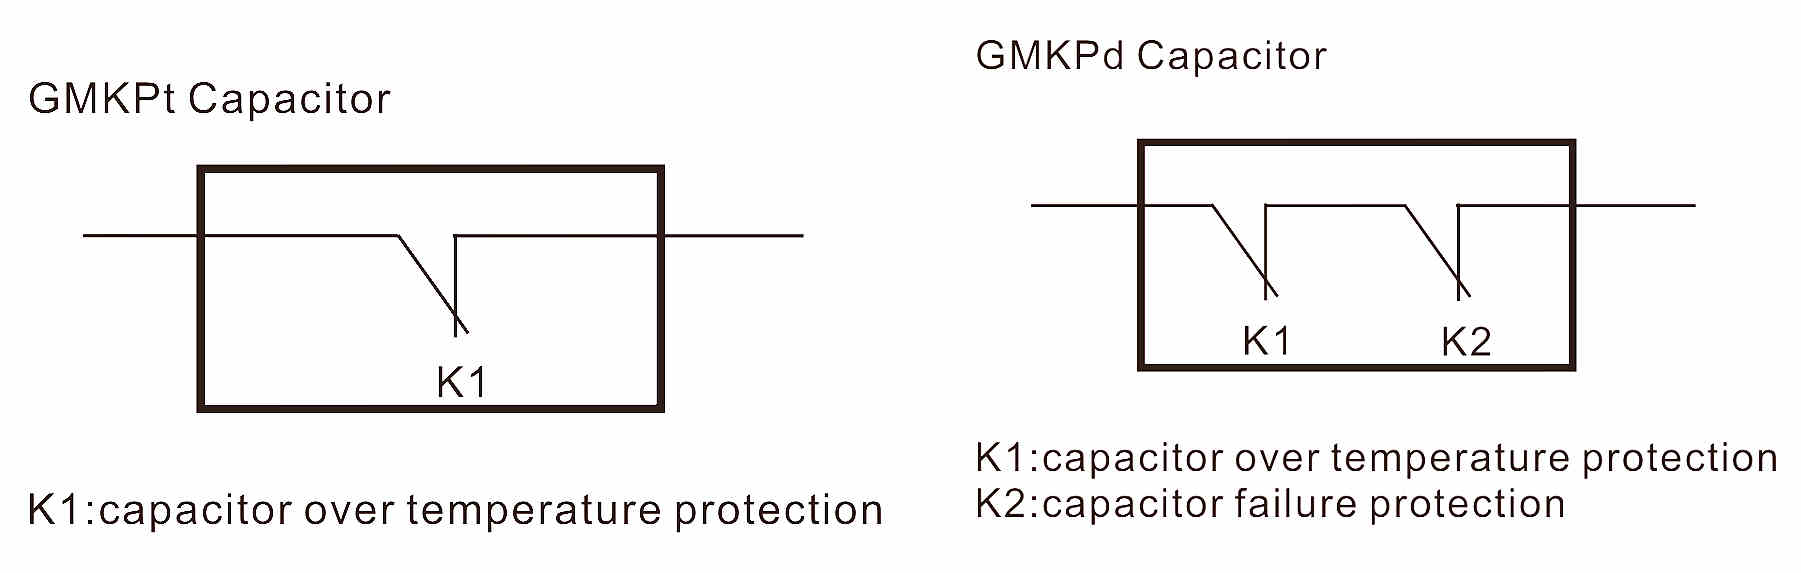 gmkpd capacitor 60K.jpg